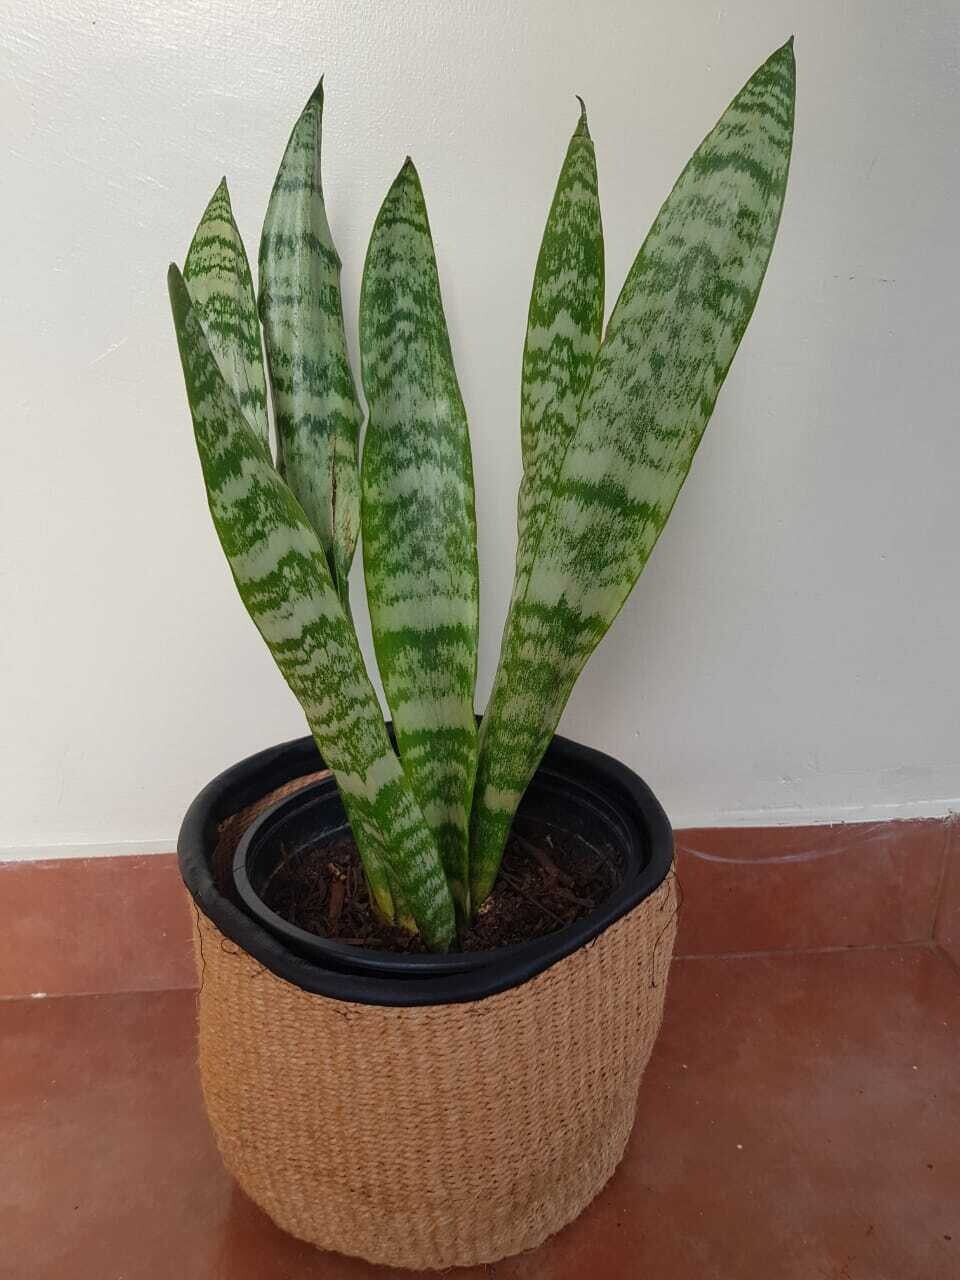 snake plant-Sansevieria trifasciata